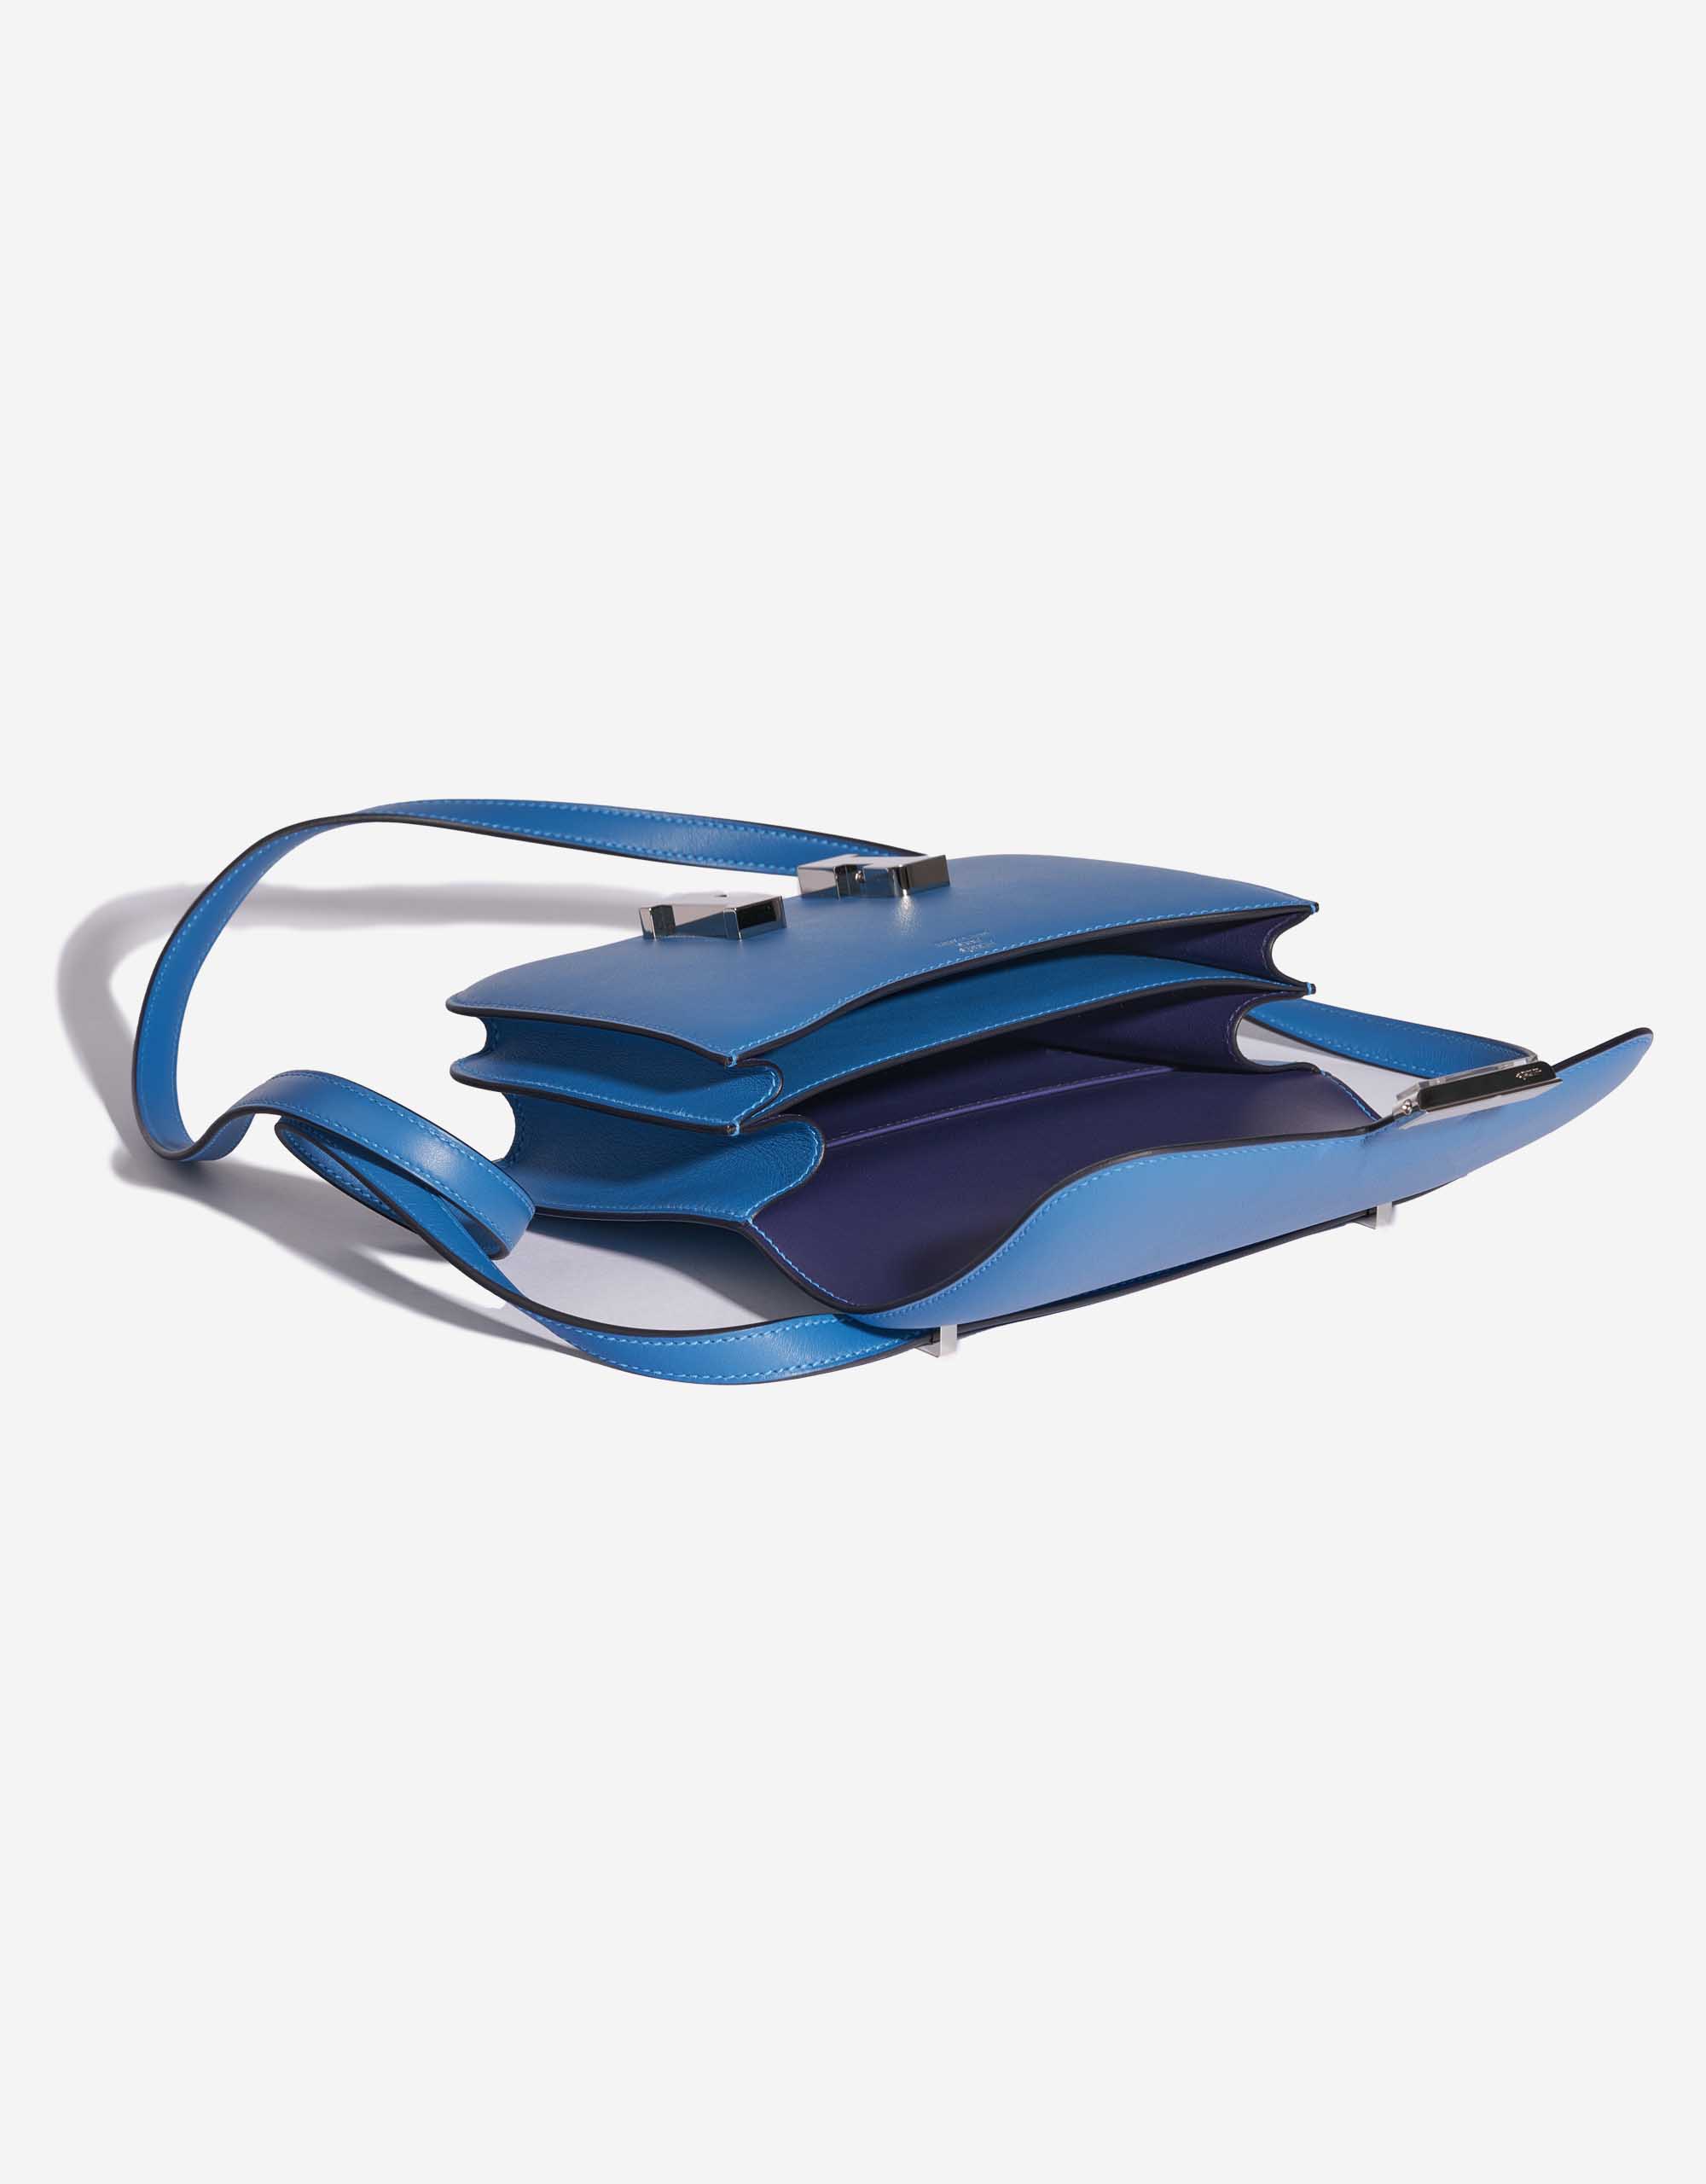 Pre-owned Hermès bag Constance 18 Swift Blue Mykonos / Blue Encre Blue Inside | Sell your designer bag on Saclab.com